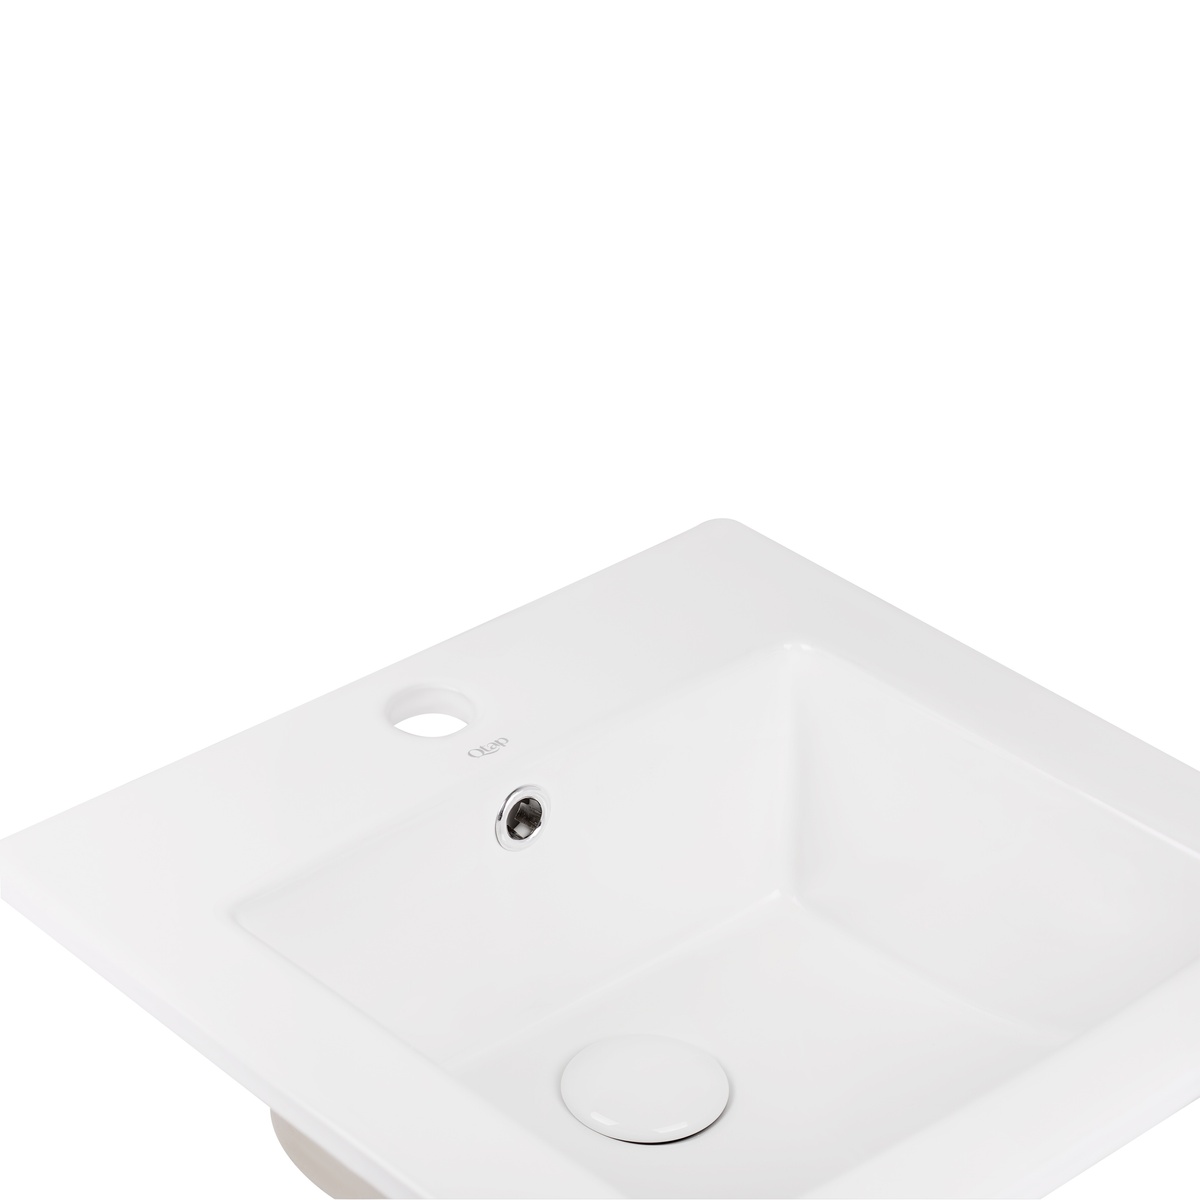 Раковина врезная для ванны на столешницу 415мм x 415мм Q-TAP Stork белый квадратная QT15116037W